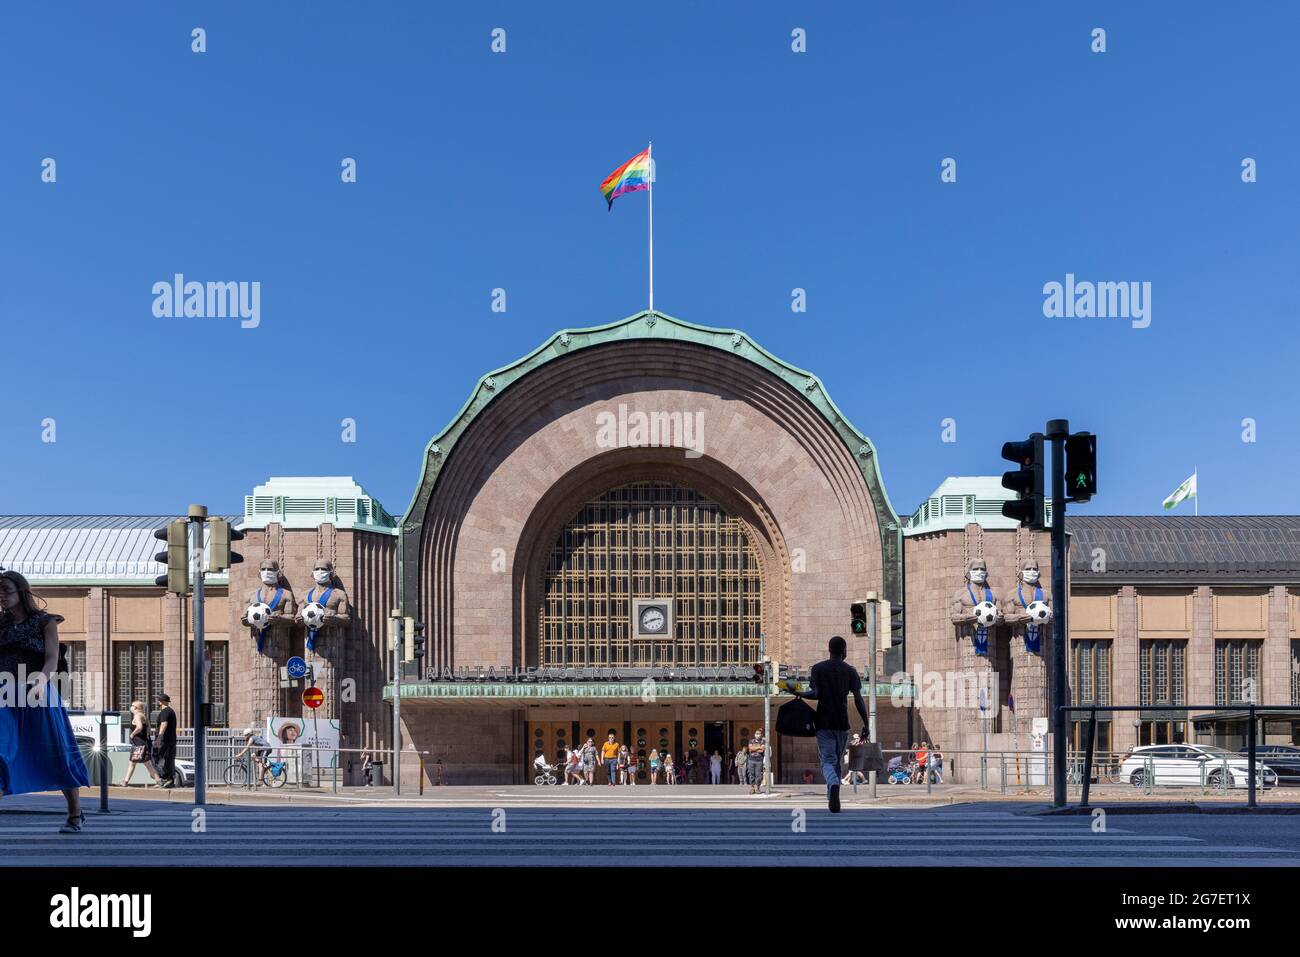 Gare d'Helsinki avec drapeau arc-en-ciel pour honorer l'événement gay Pride Banque D'Images